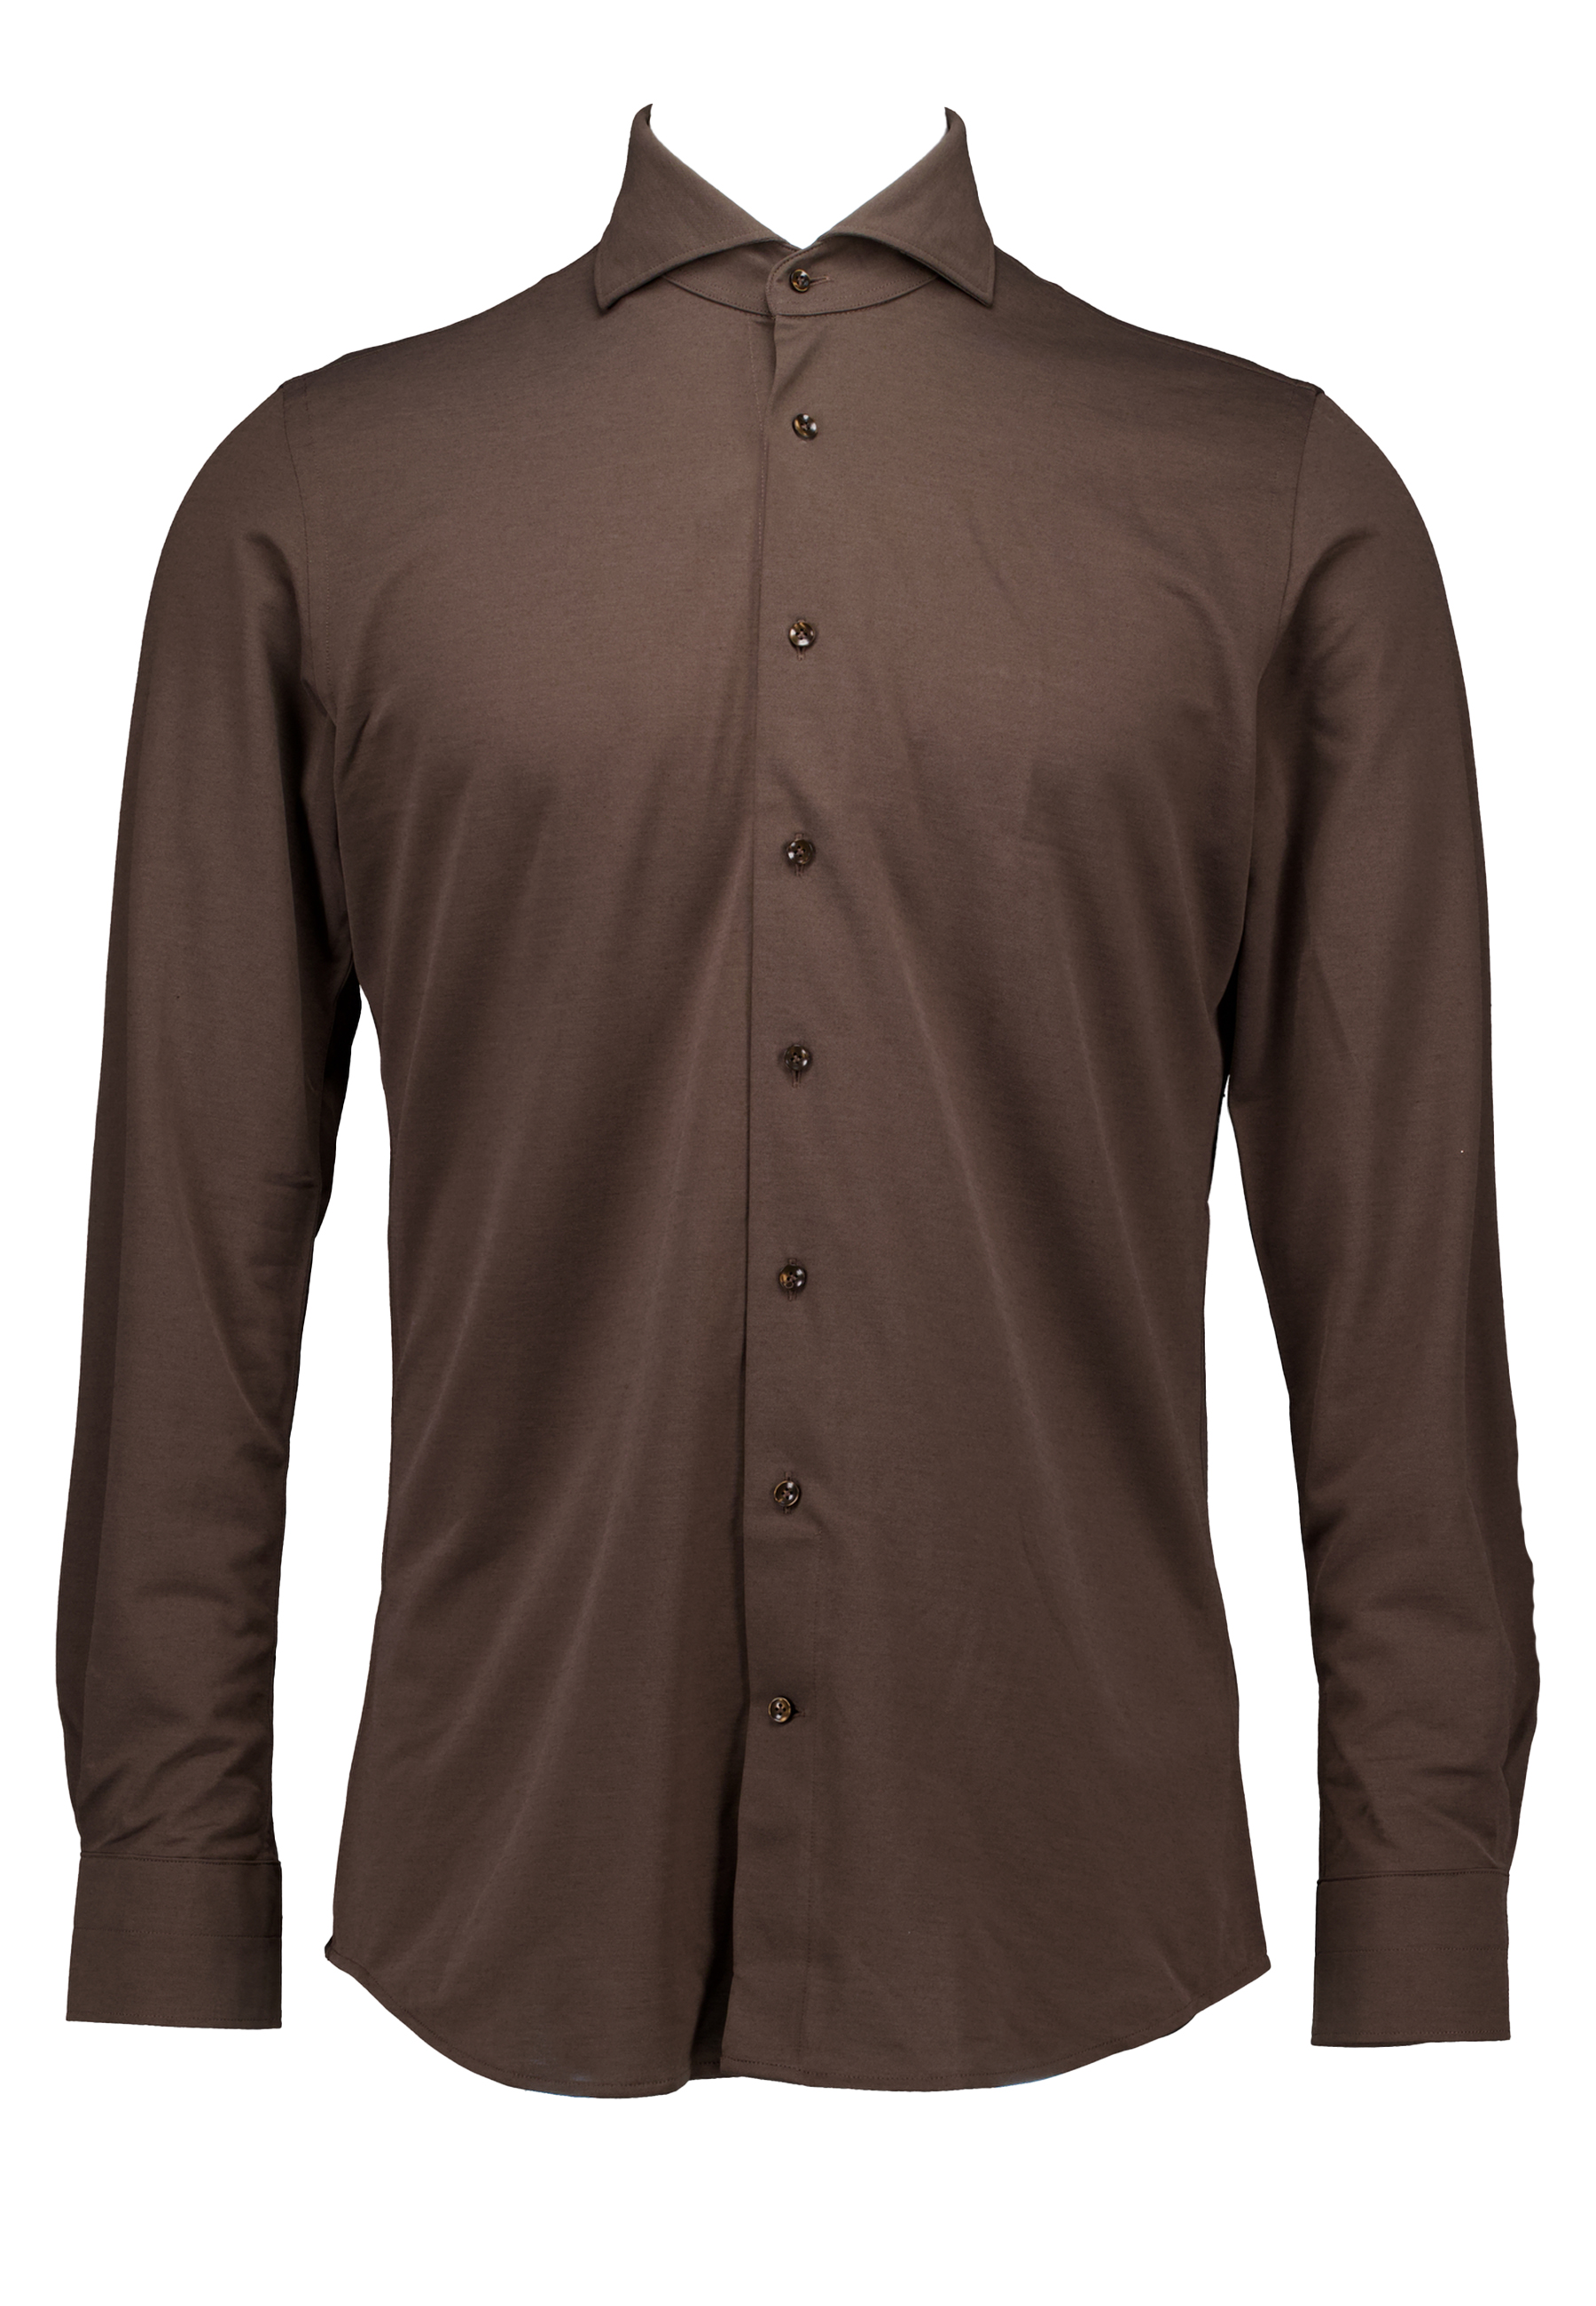 Profuomo Overhemd Bruin Katoen maat 37 X-cutaway sc sf lange mouw overhemden bruin